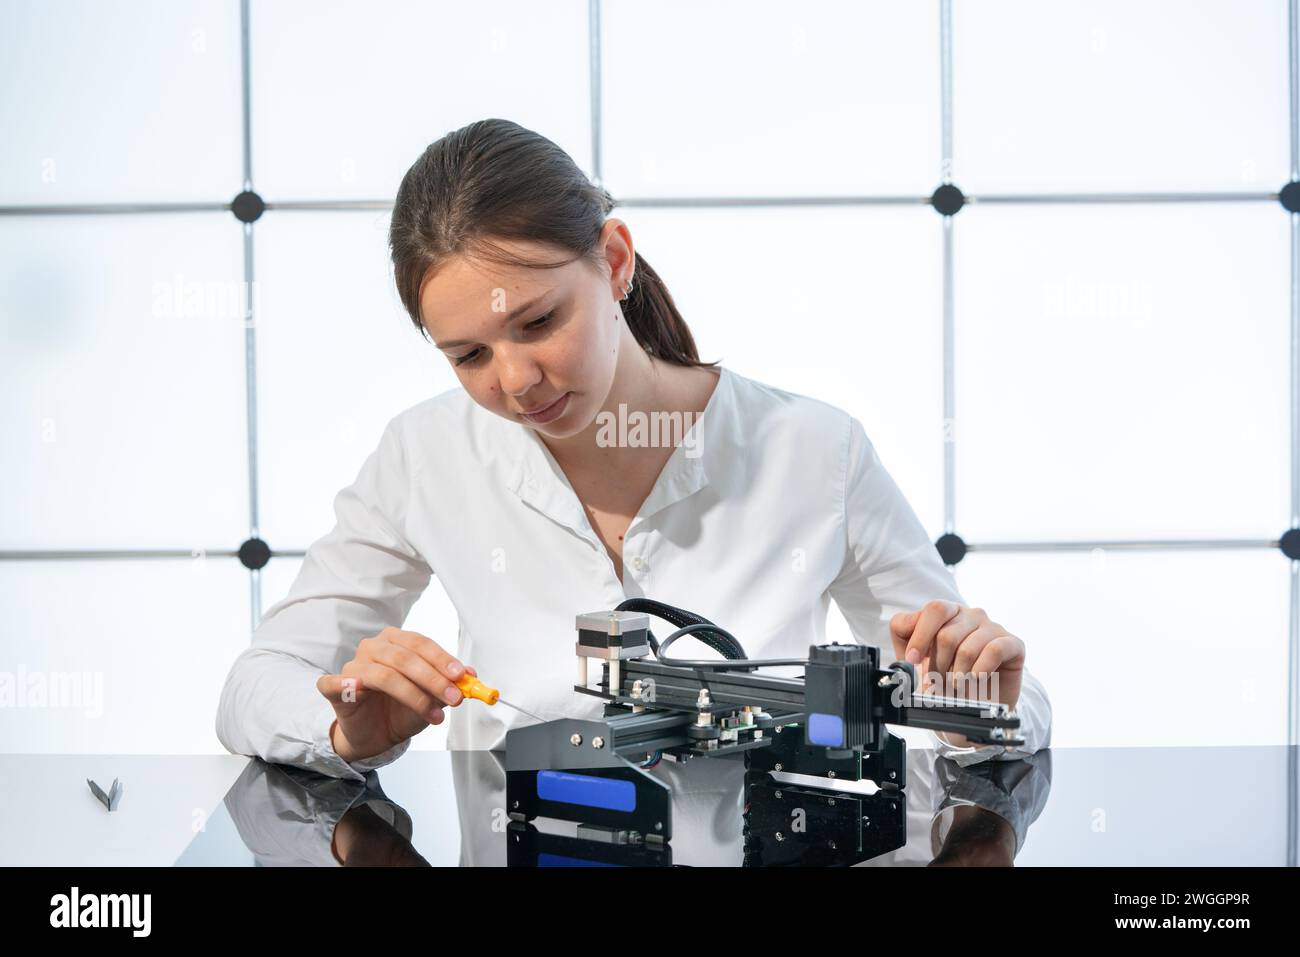 Scientific Technician Conducting Digital Research Experiment in Laboratory Stock Photo